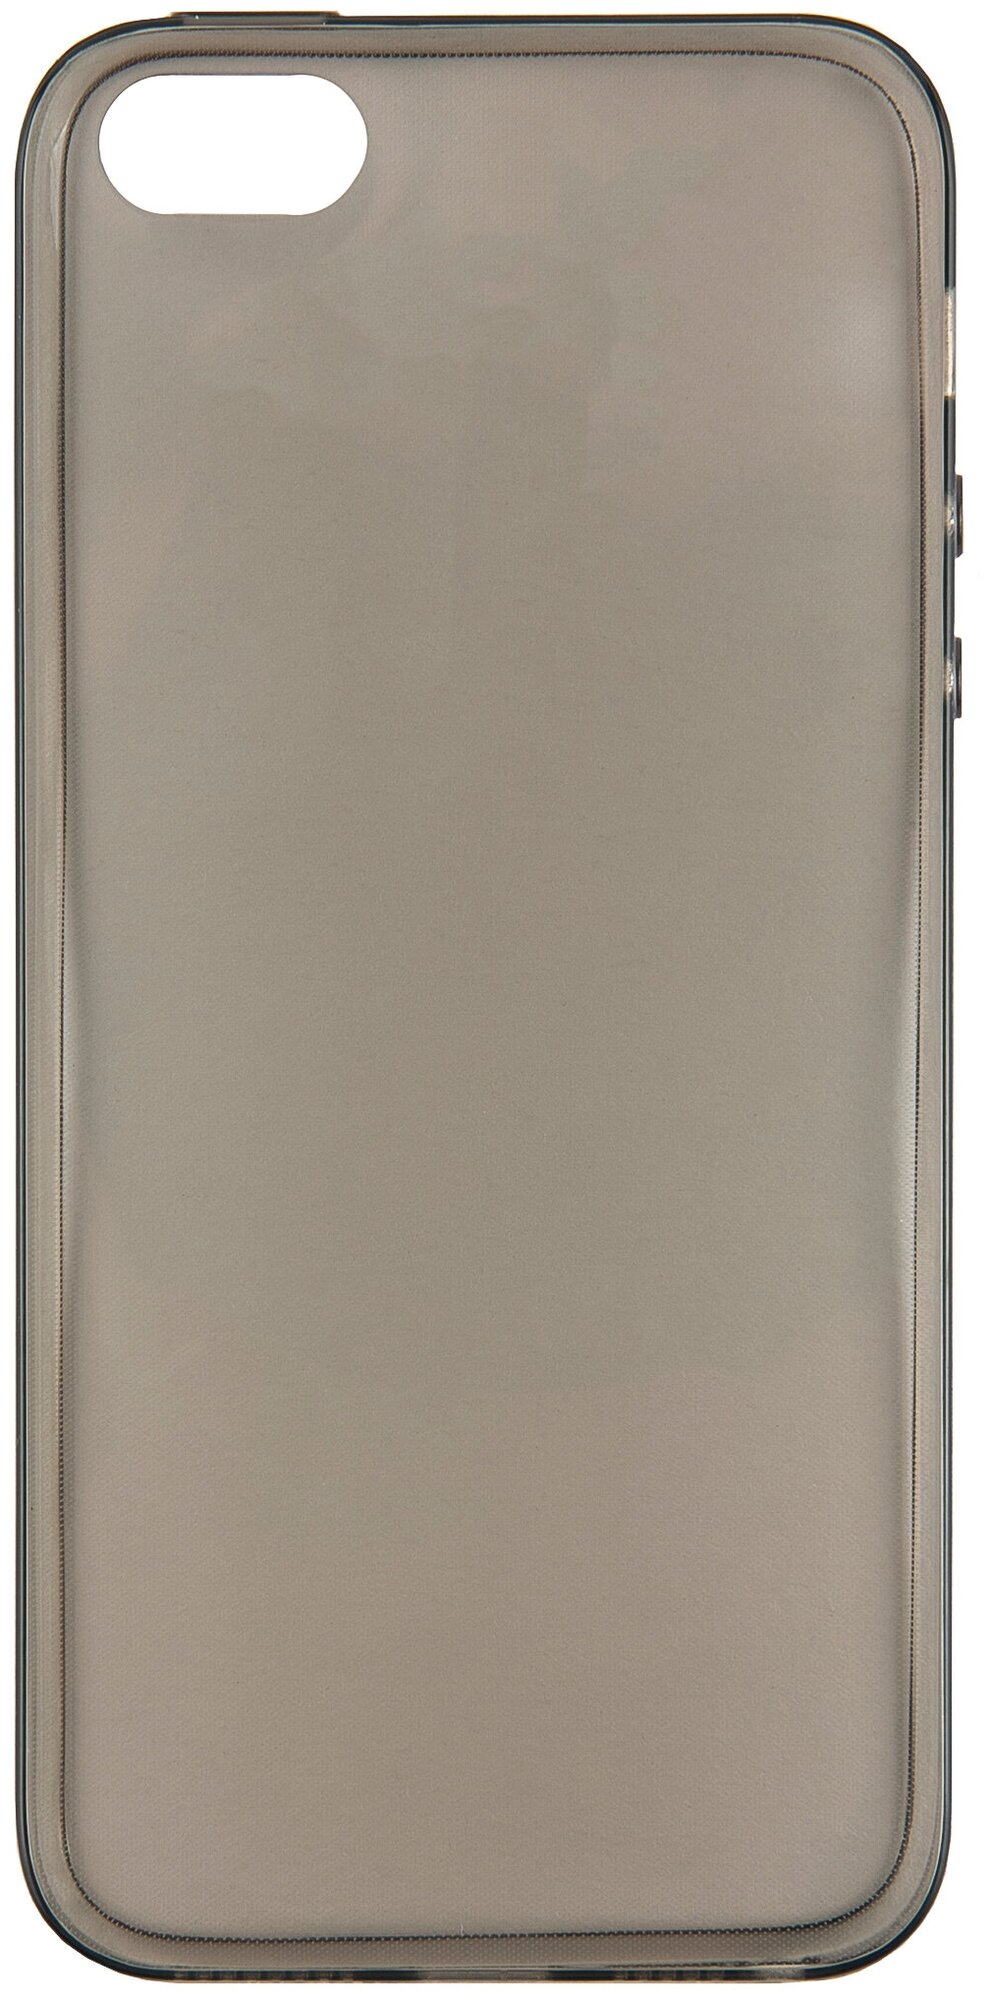 Чехол для iPhone 5/5S/SE / Айфон 5/5S/SE силиконовая серая накладка